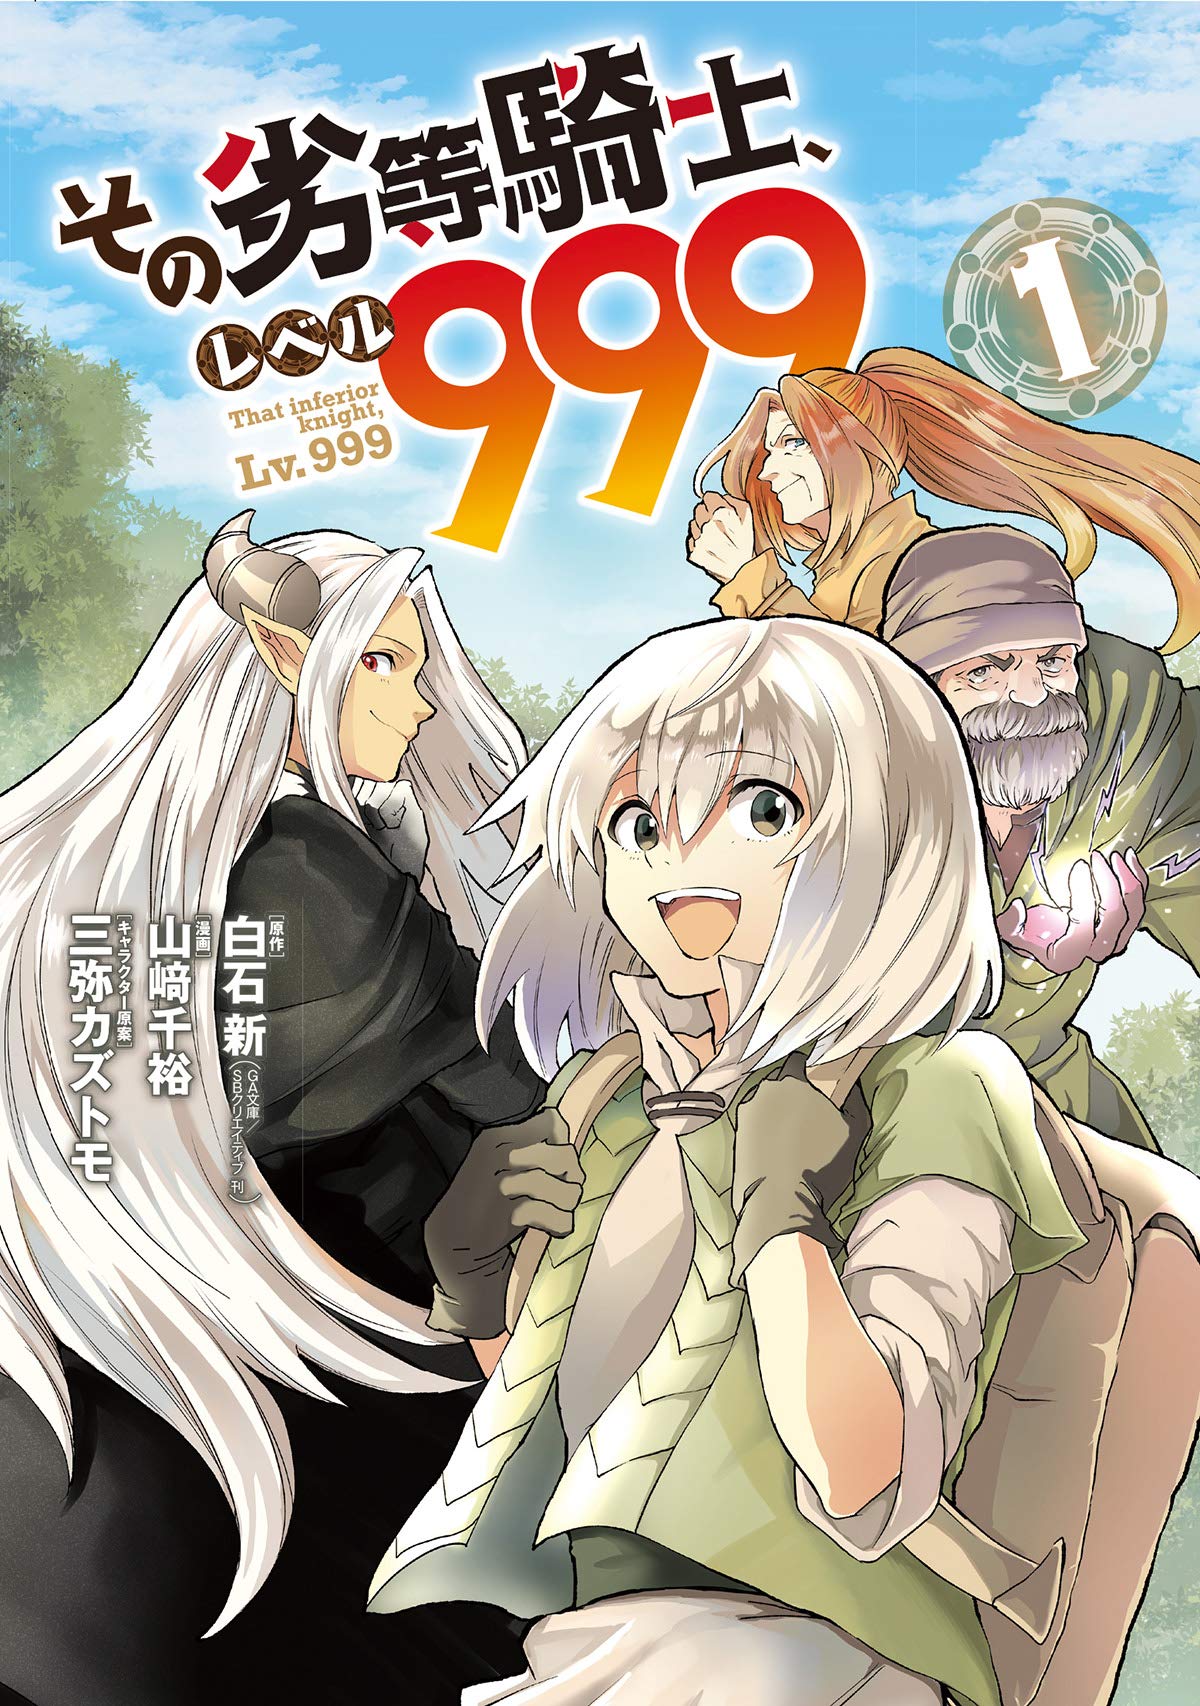 lv 999 manga